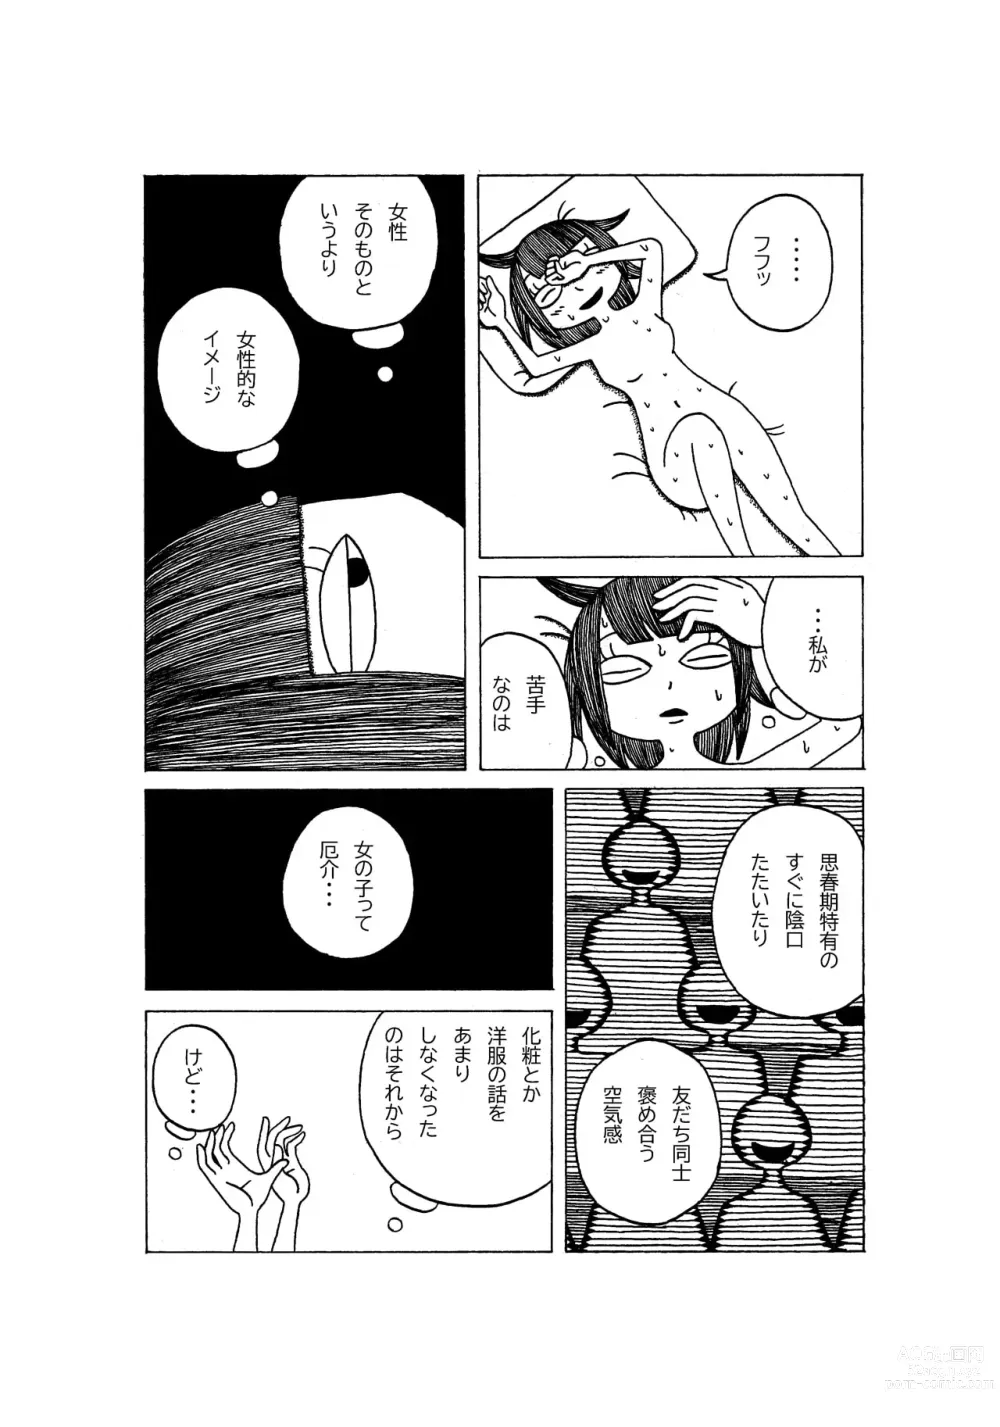 Page 8 of doujinshi Tokubetsuna Tanjoubi no Dekigoto.